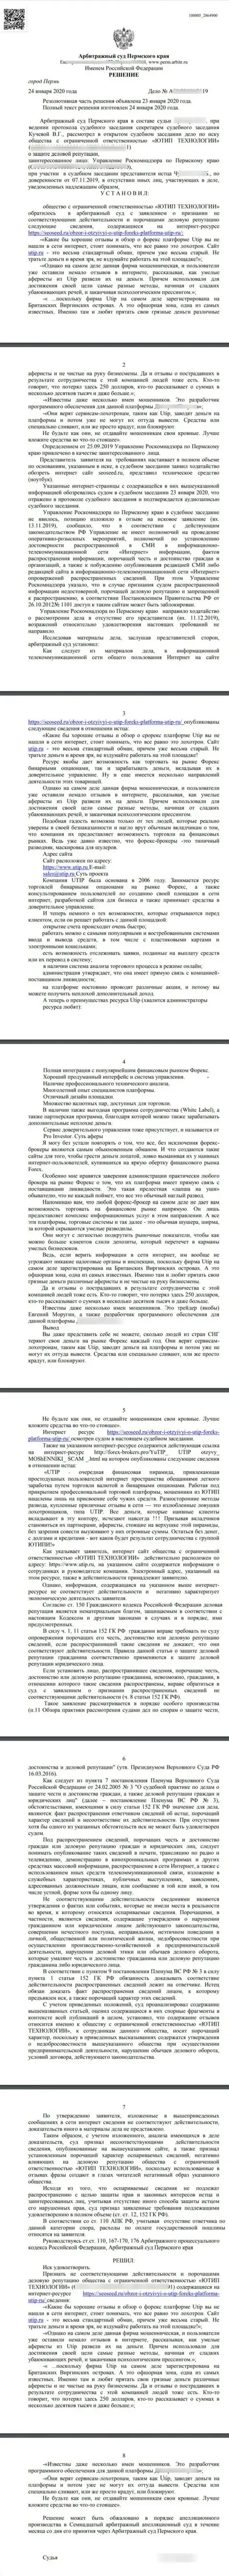 Иск мошенников UTIP Ru в отношении информационного сервиса SeoSeed, который был удовлетворён самым справедливым судом в мире